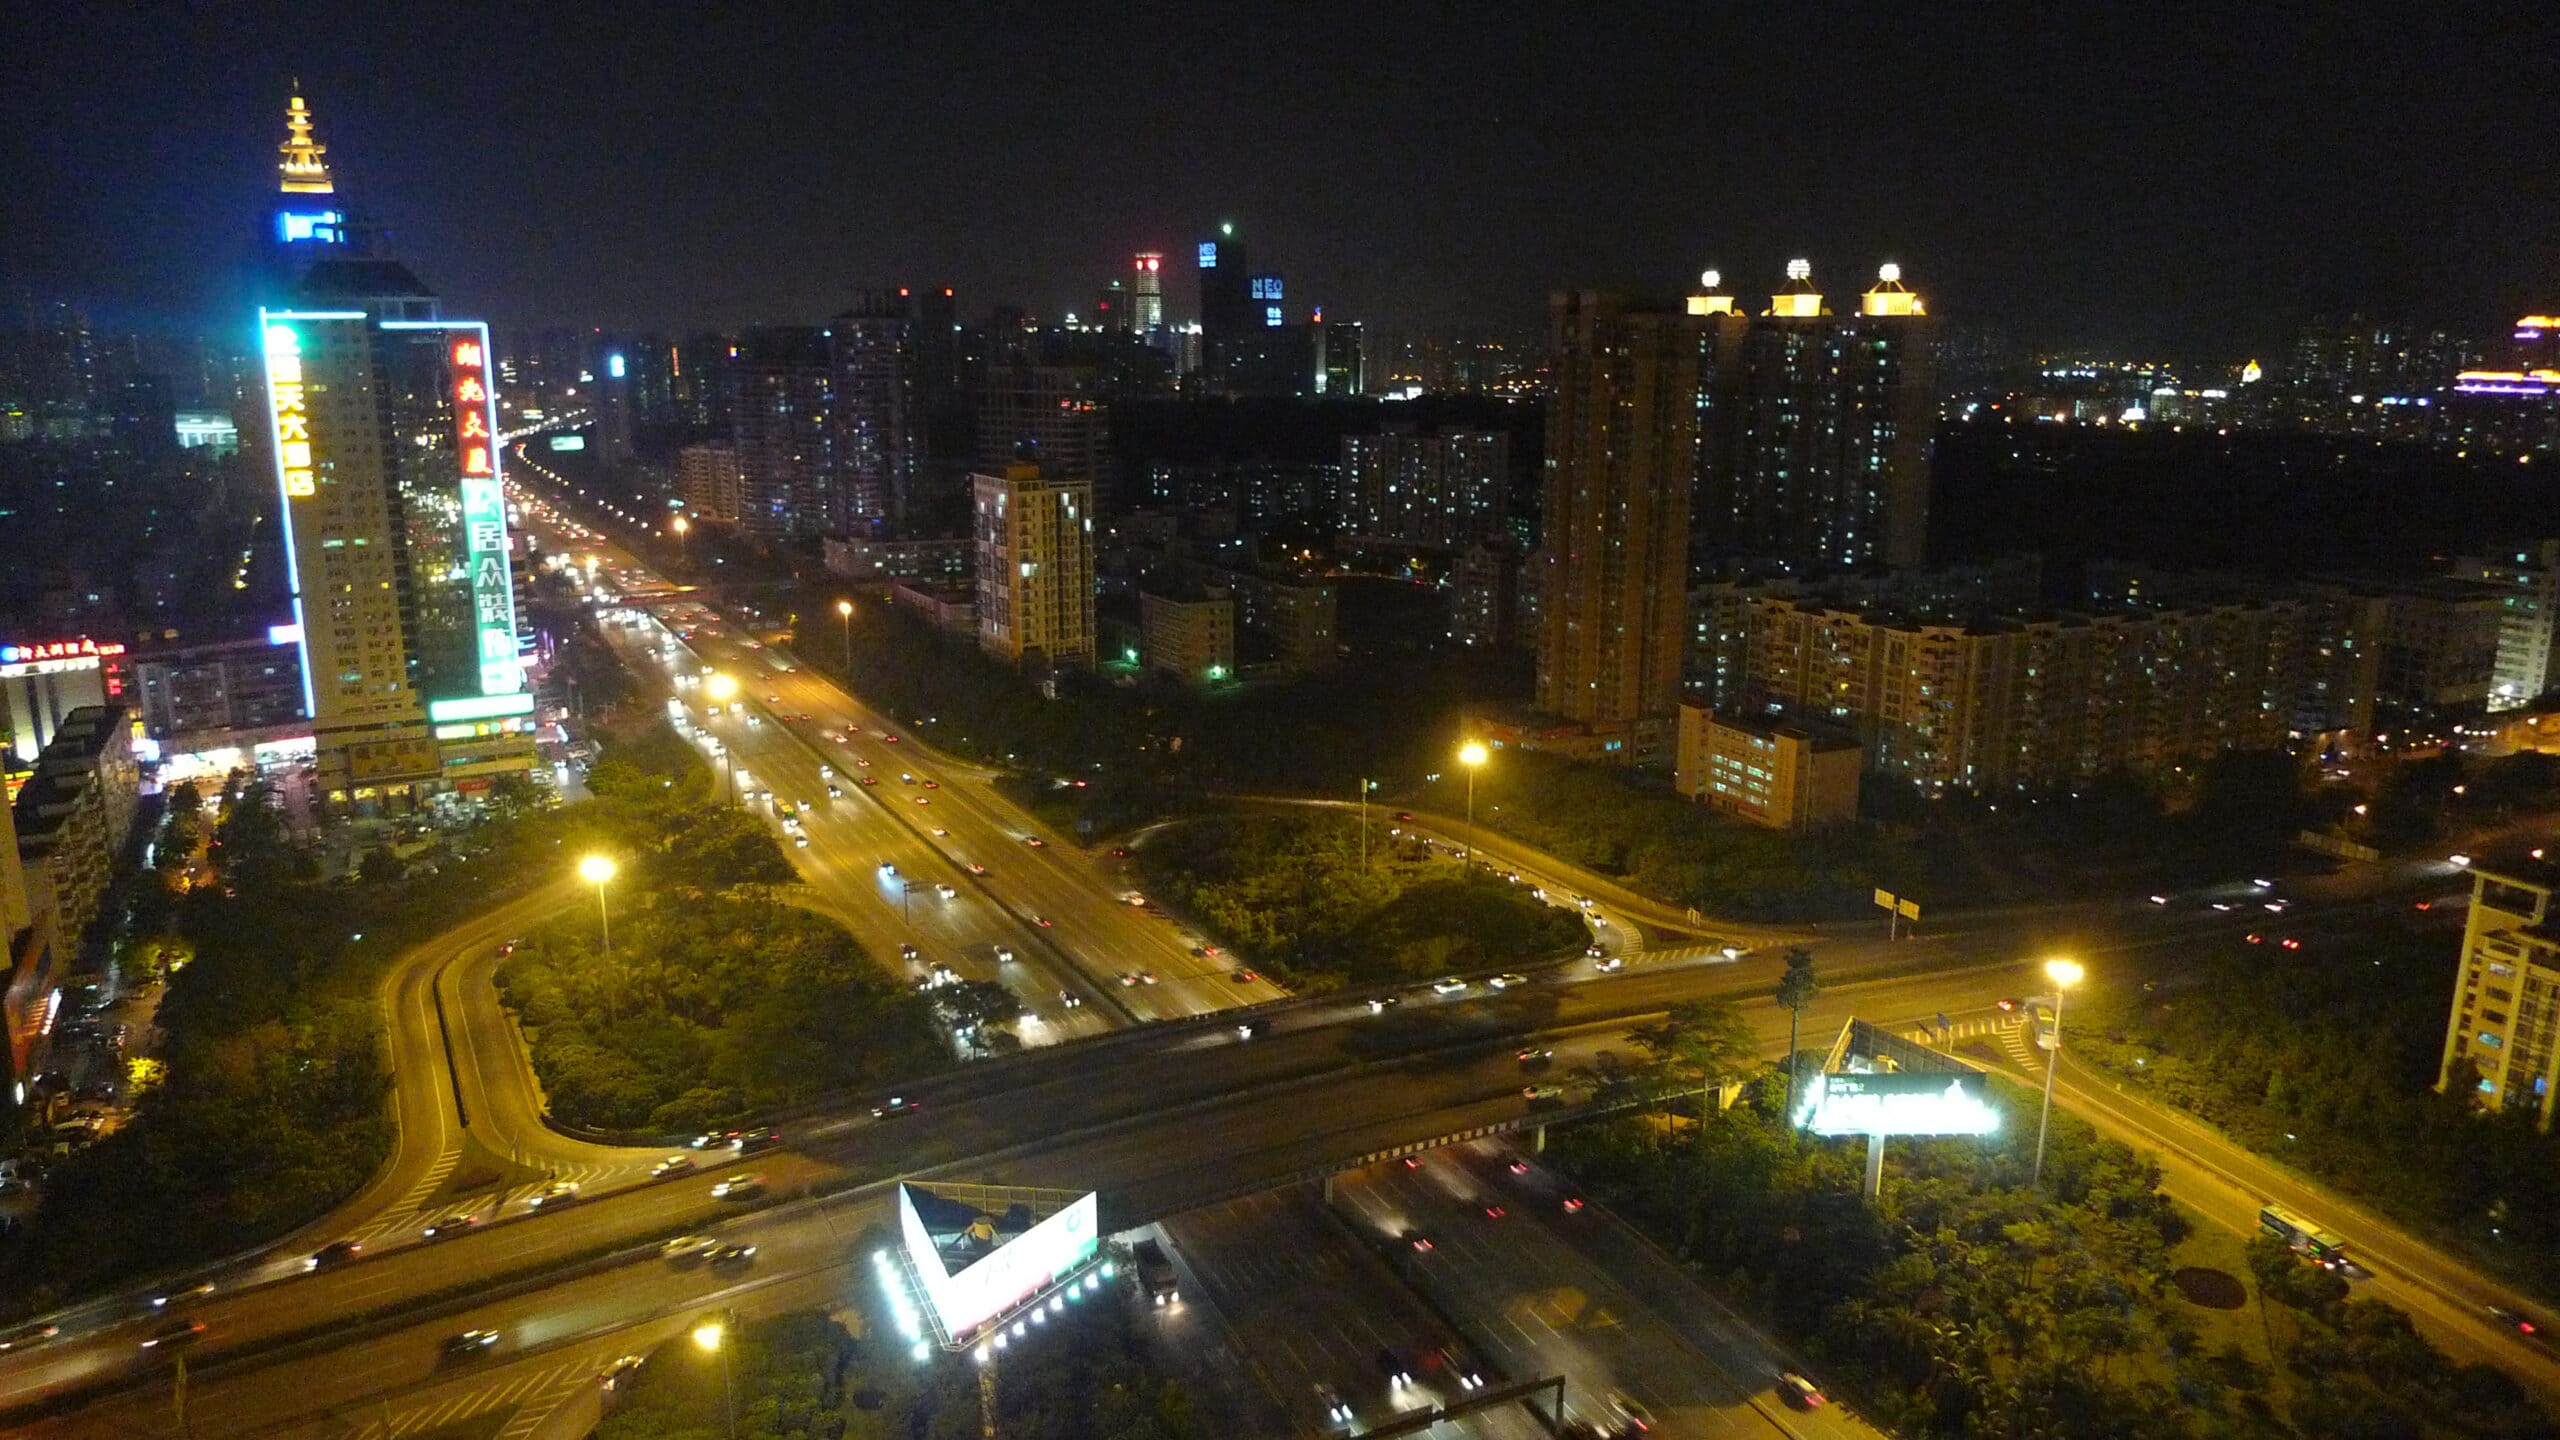 10pm in Shenzhen